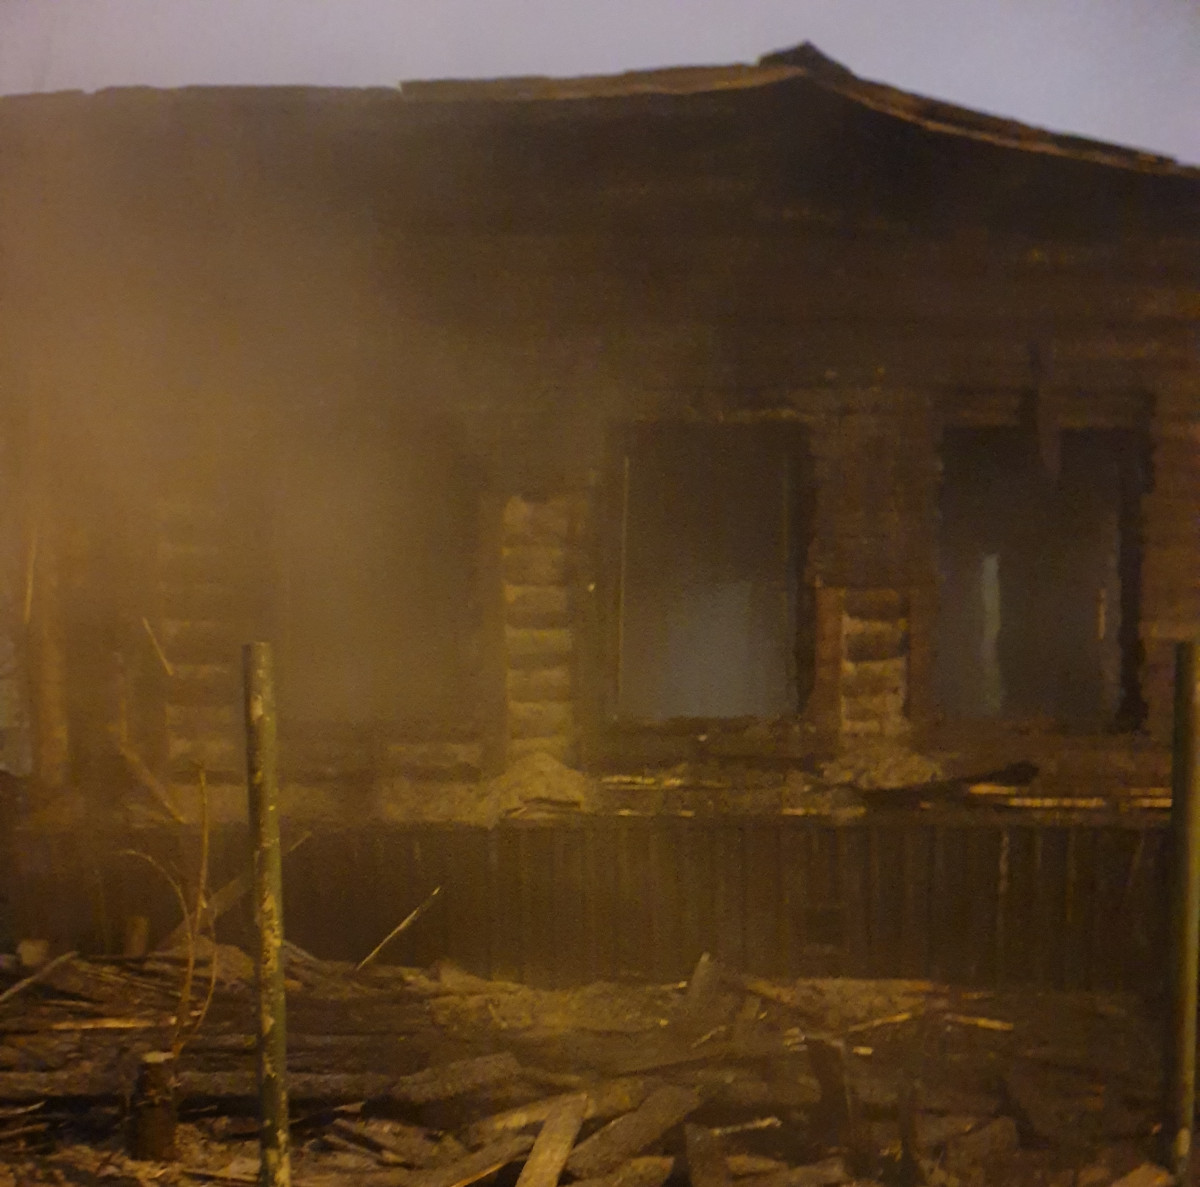 Частный дом обгорел на улице Грубе в Нижнем Новгороде